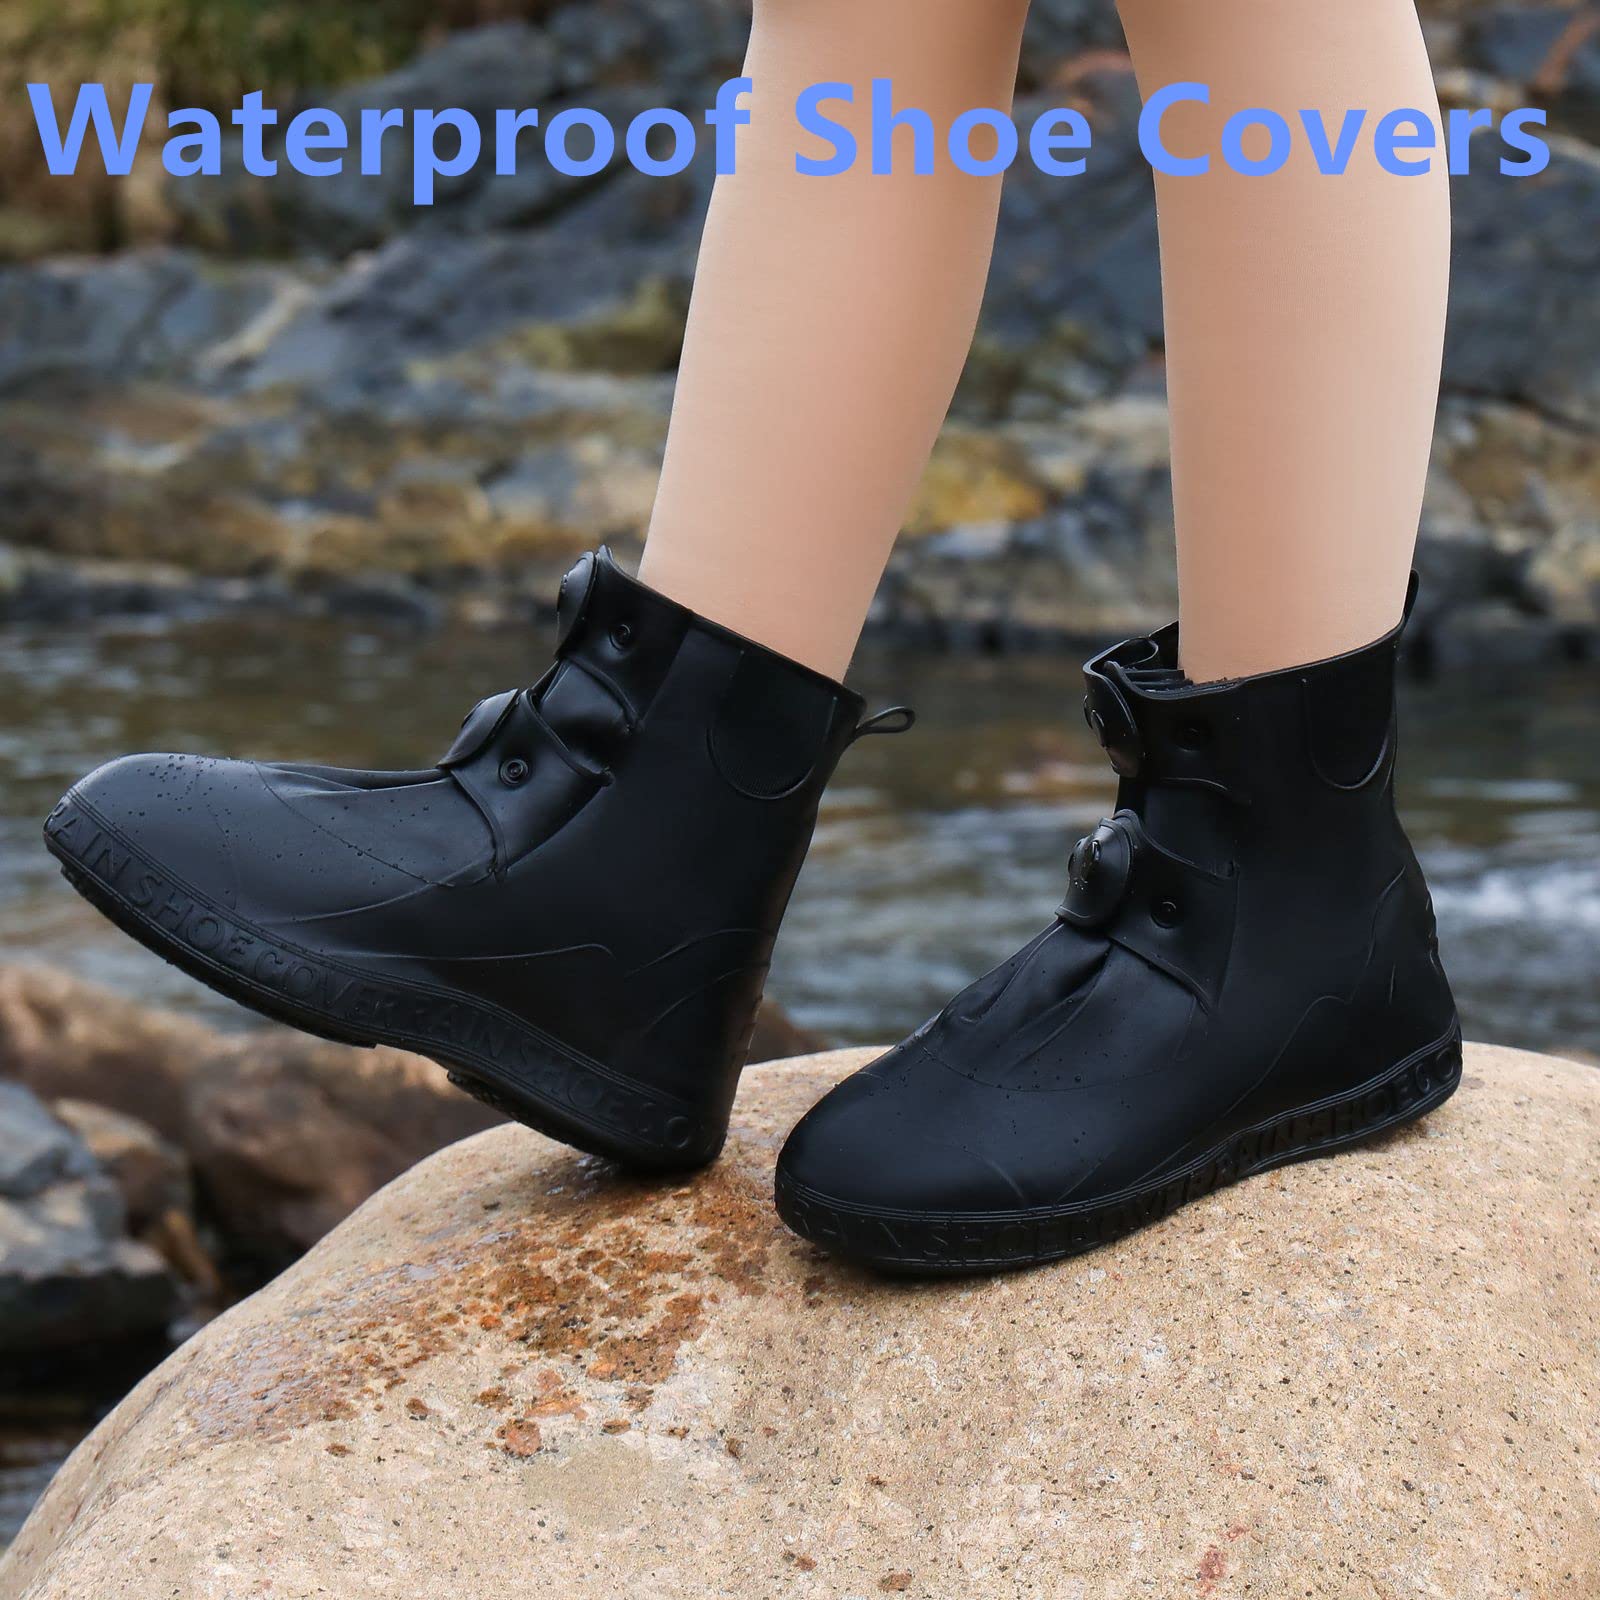 DARAEKJ Waterproof Shoe Covers, Reusable Rain Shoe Covers Waterproof,Non Slip Durable Silicone Shoe Covers Waterproof for Men and Women (XXXL (Women 9.5-11, Men 9-10.5), Black)